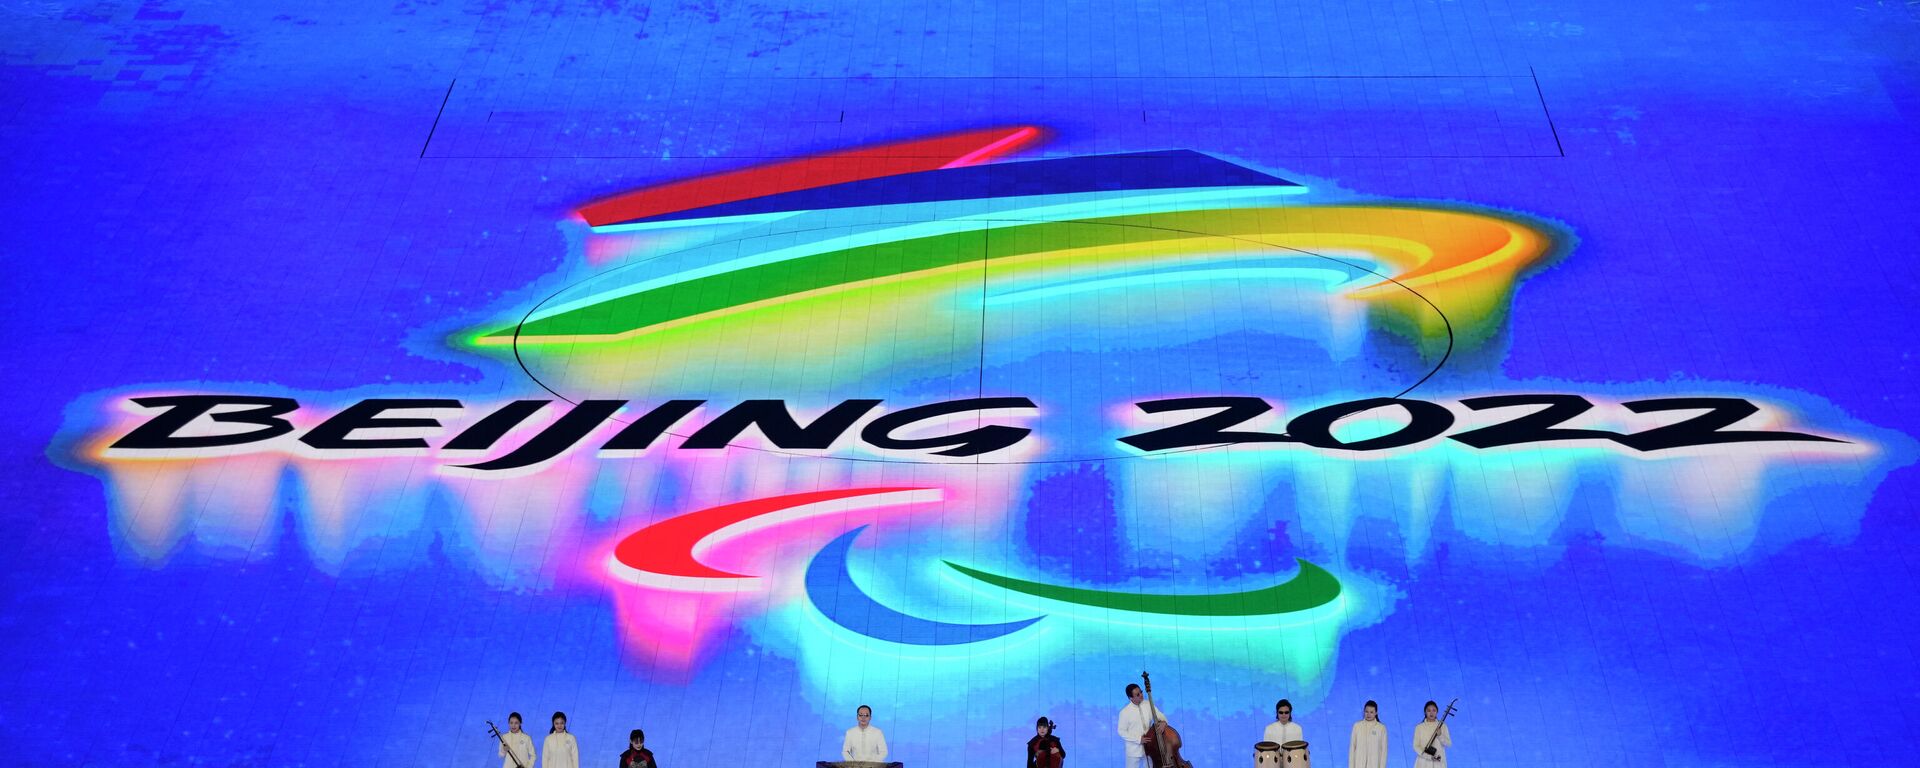 Церемонии открытия Зимних Паралимпийских игр 2022 в Пекине - Sputnik Azərbaycan, 1920, 04.03.2022